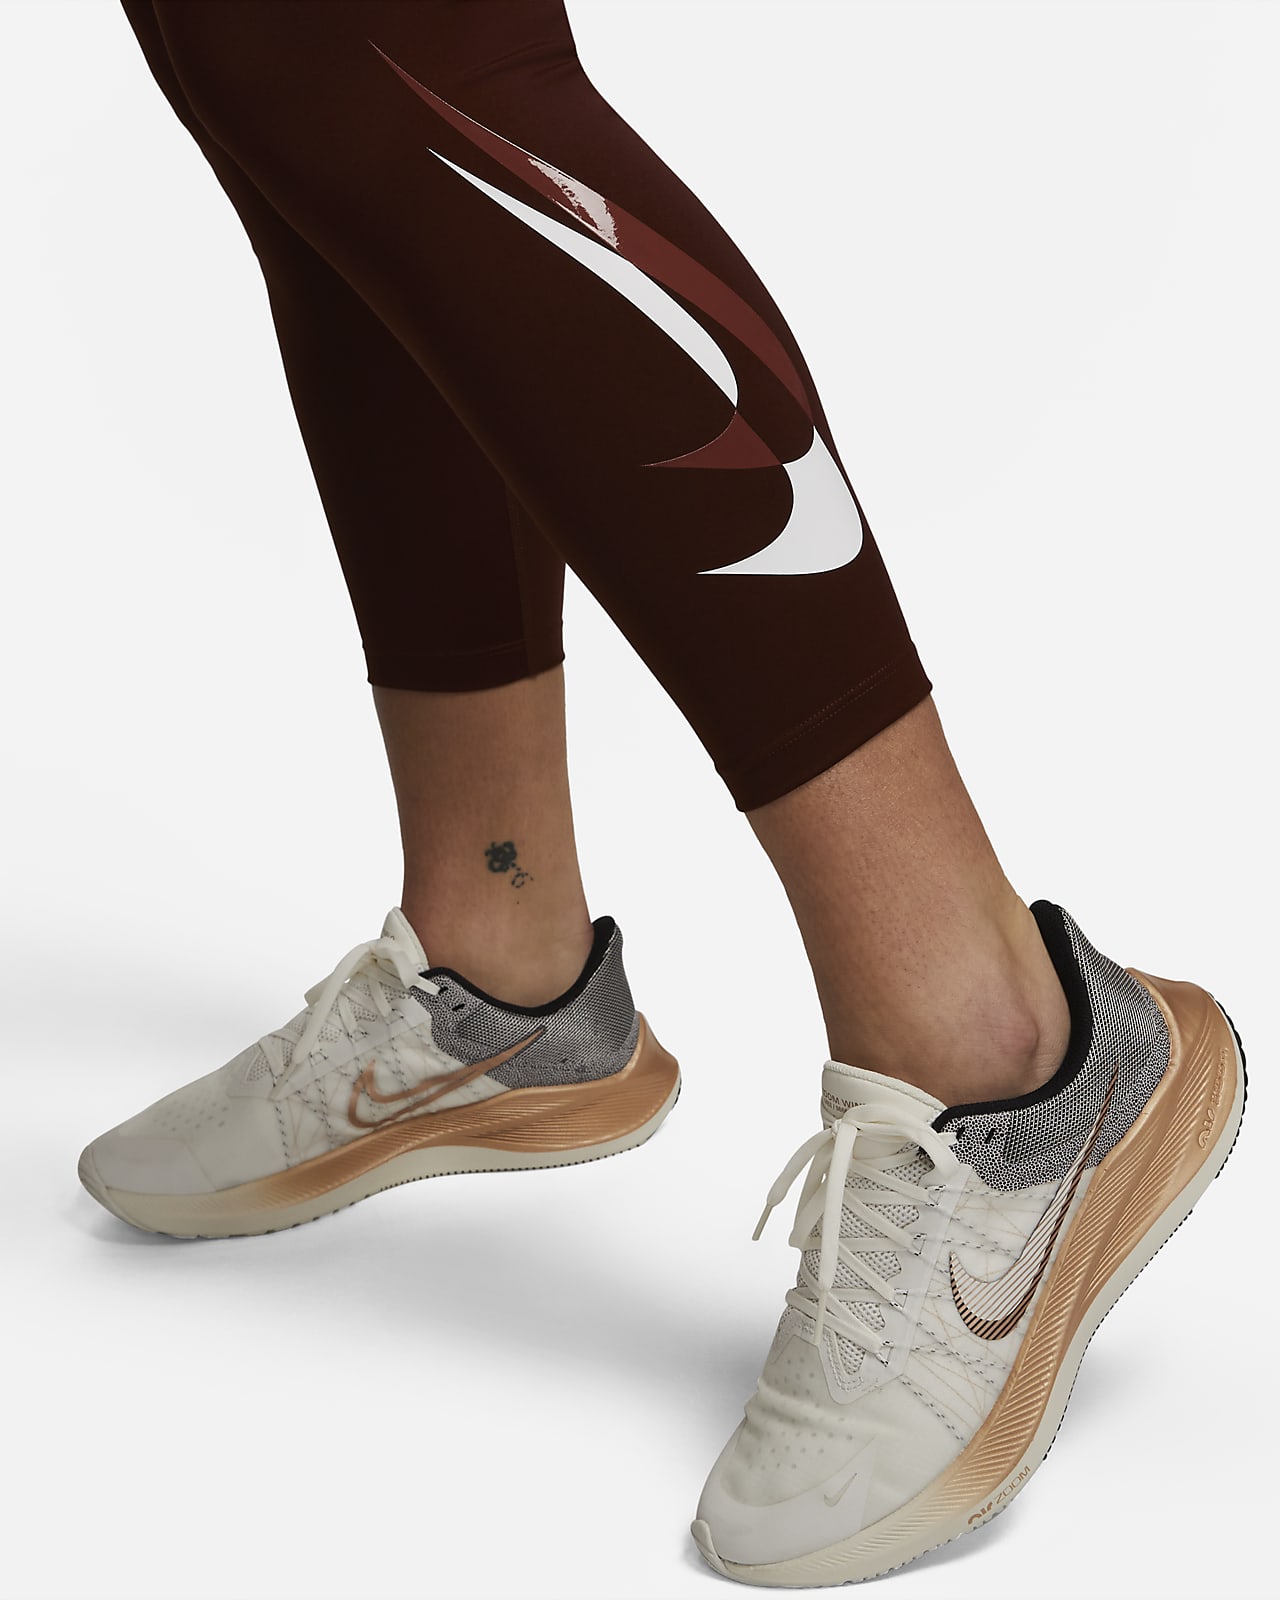 Nike Swoosh Run Women's 7/8 Mid-Rise Graphic Running Leggings